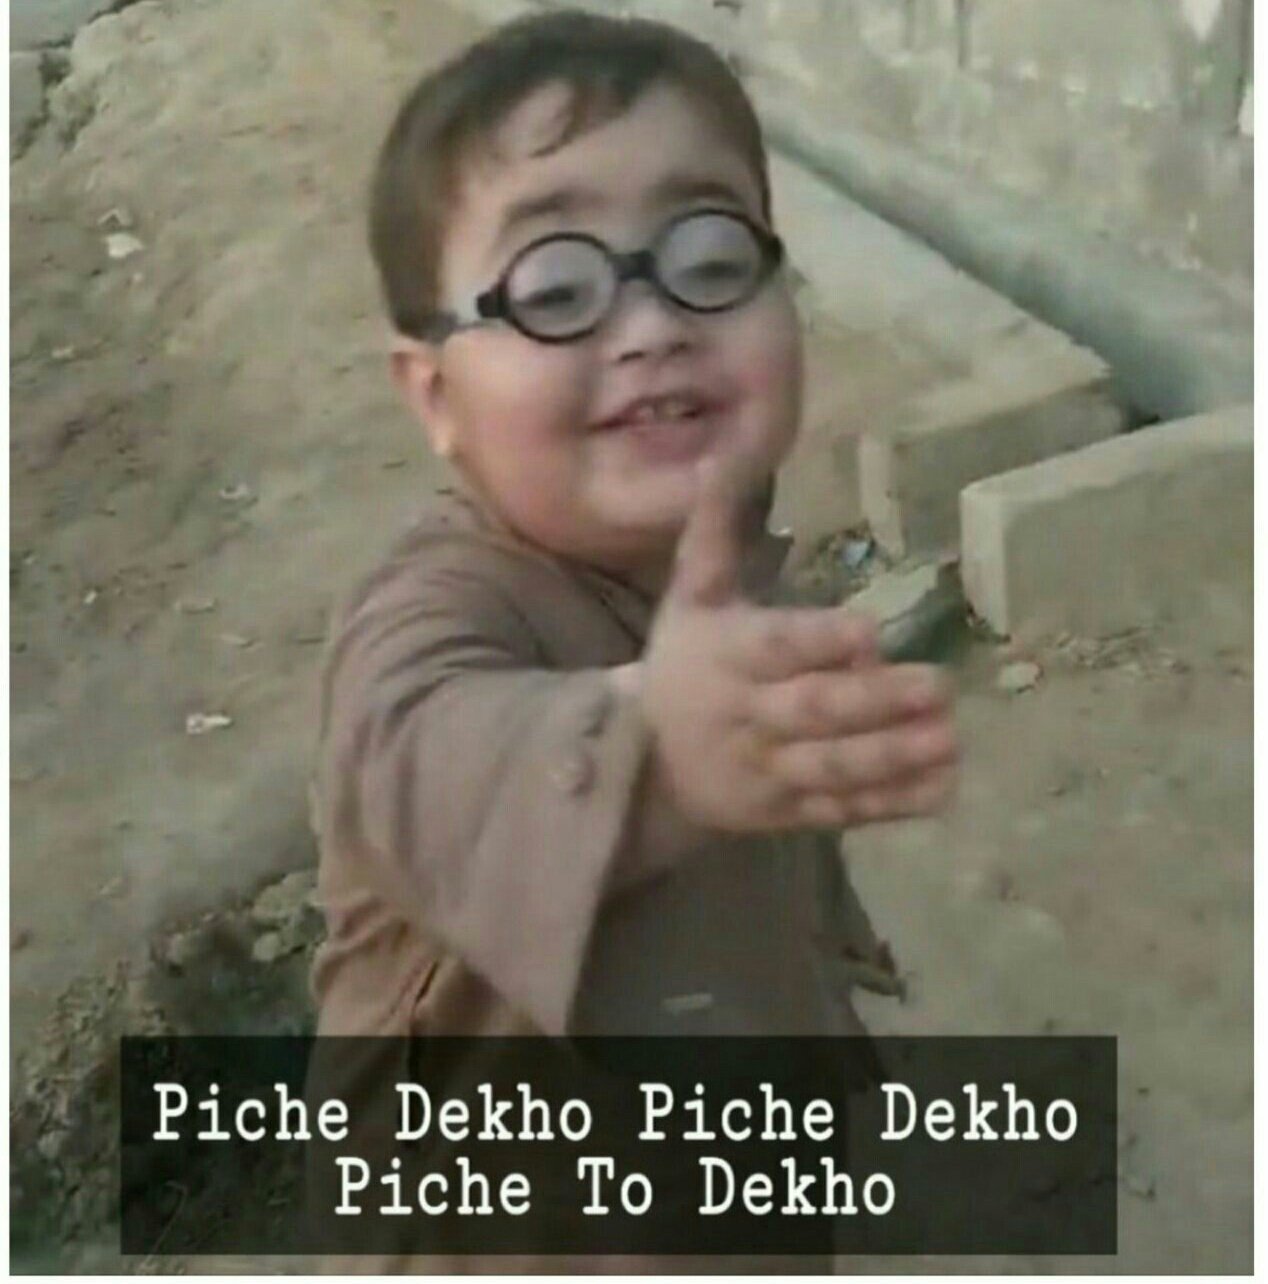 High Quality Piche Dekho Piche Dekho Piche to Dekho Blank Meme Template